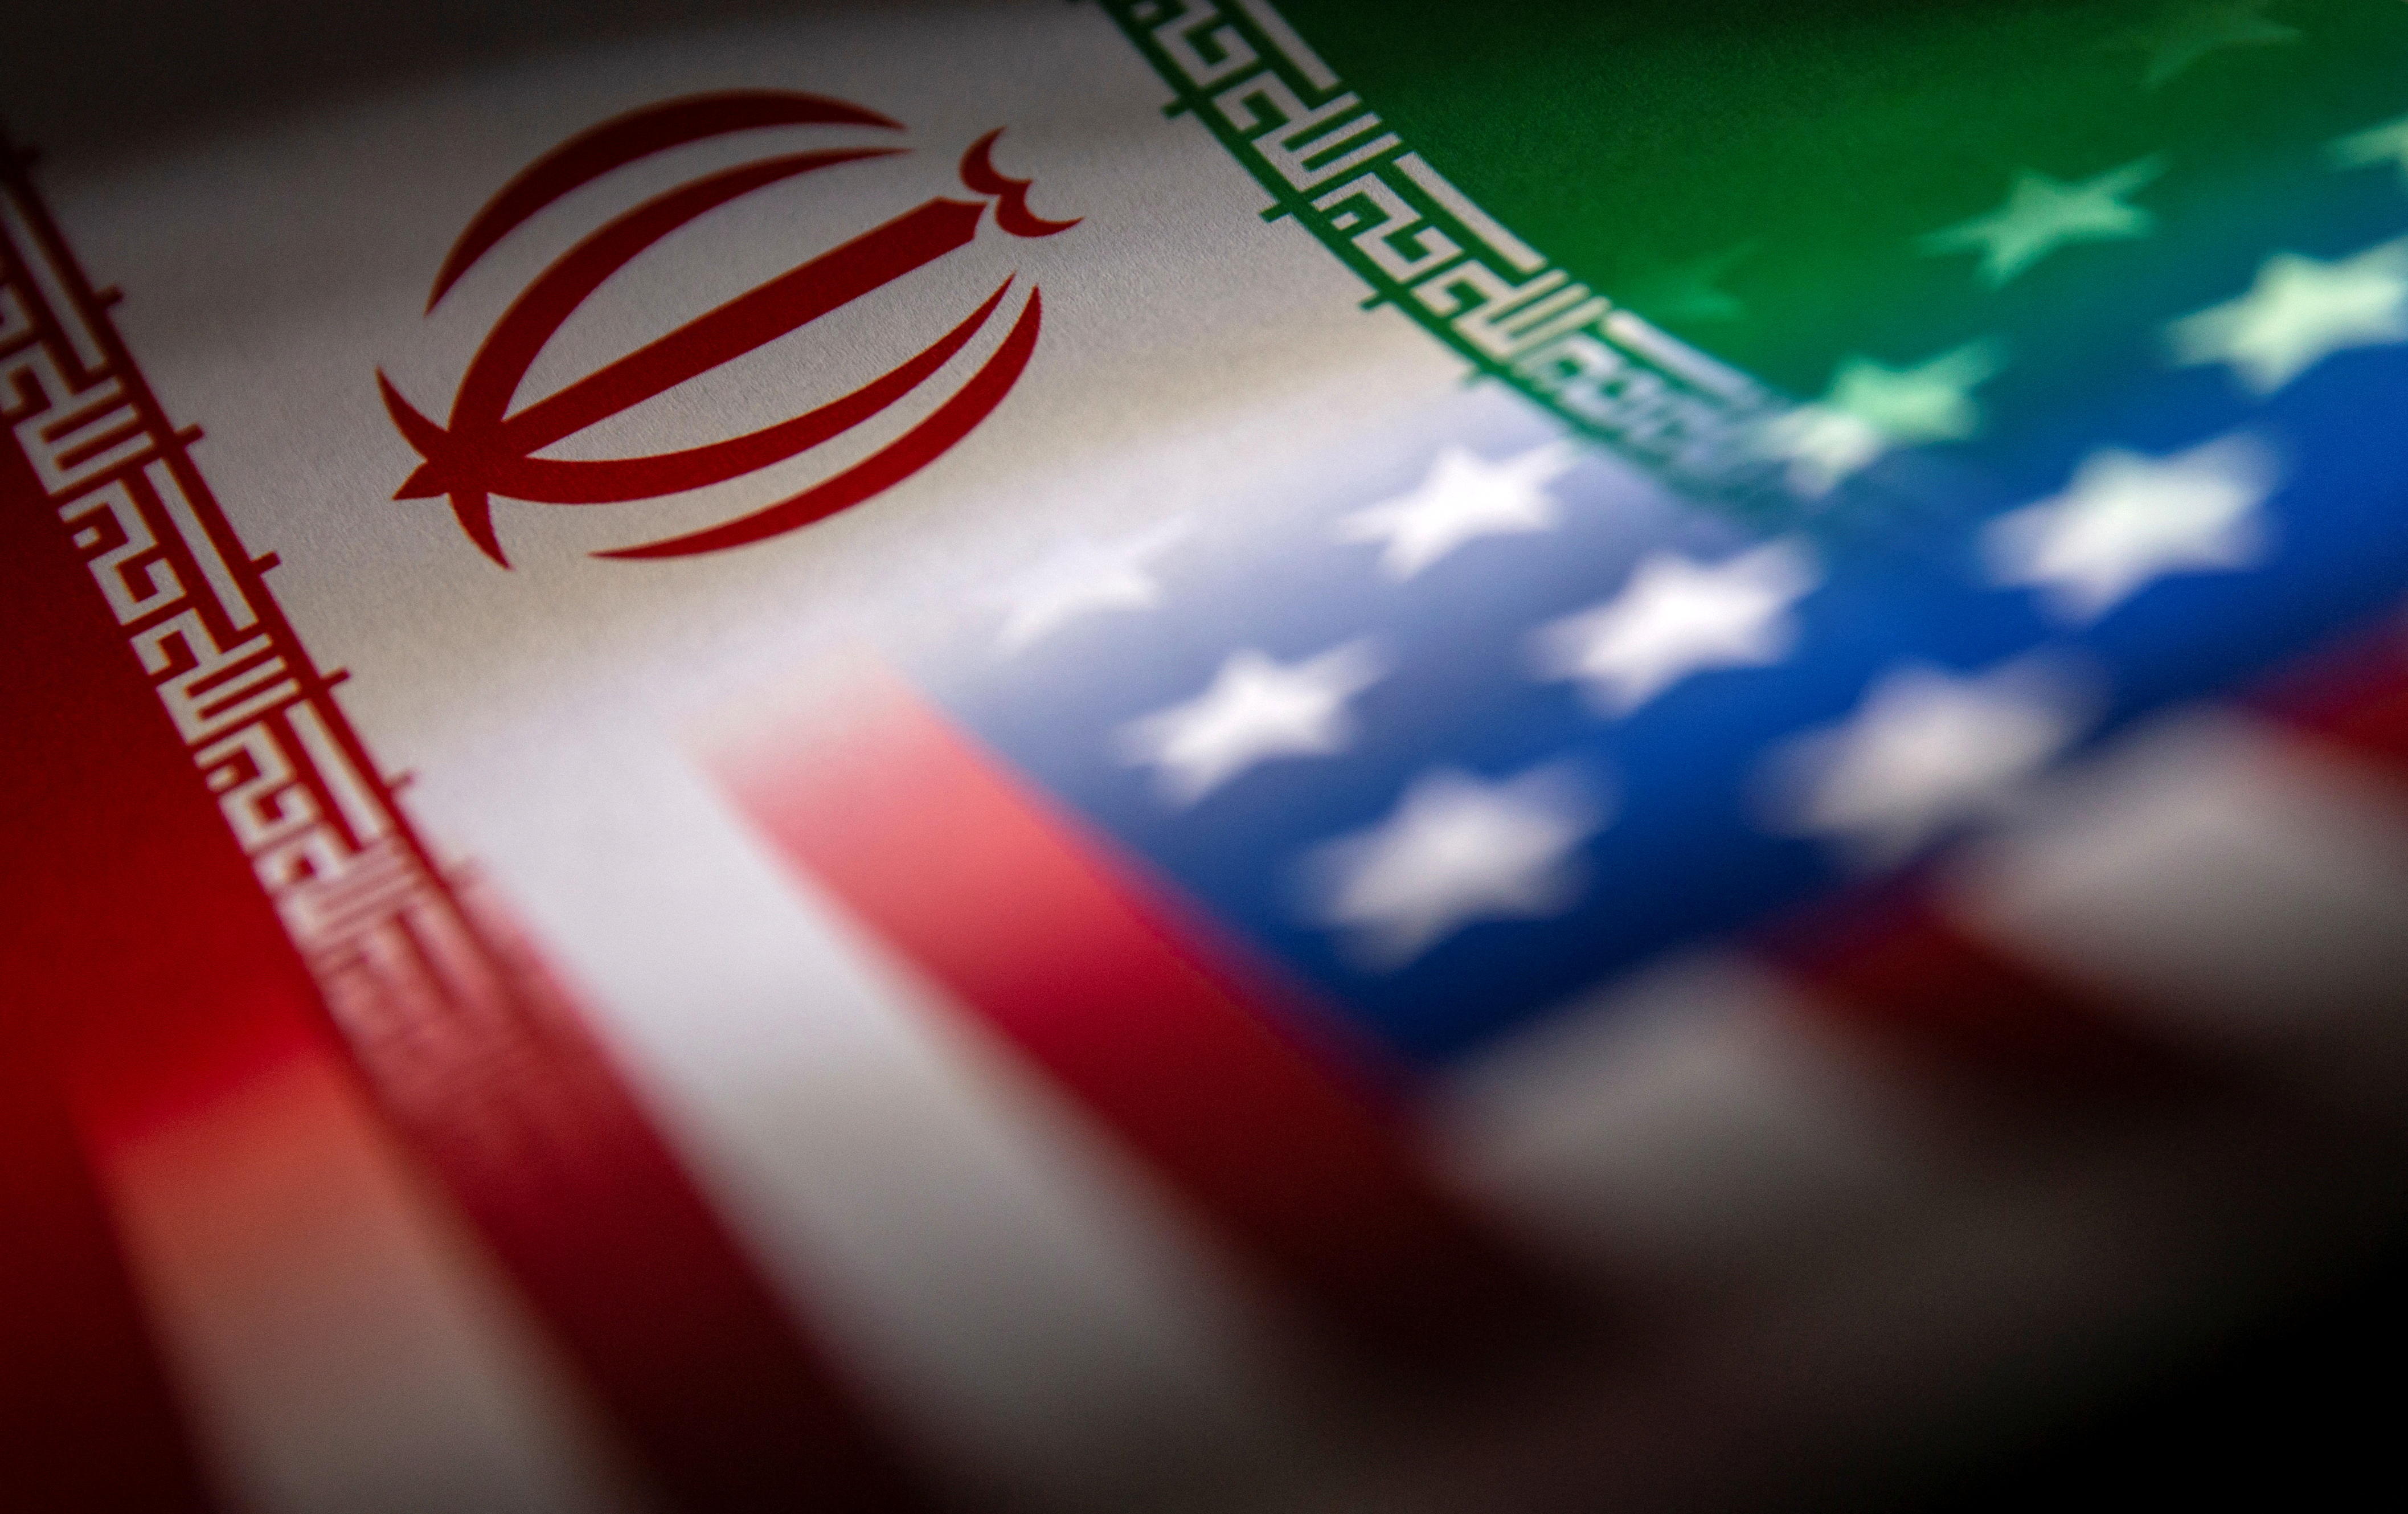 خبر مهم درباره توافق ایران وآمریکا | این توافق یک برجام کوچک نانوشته است